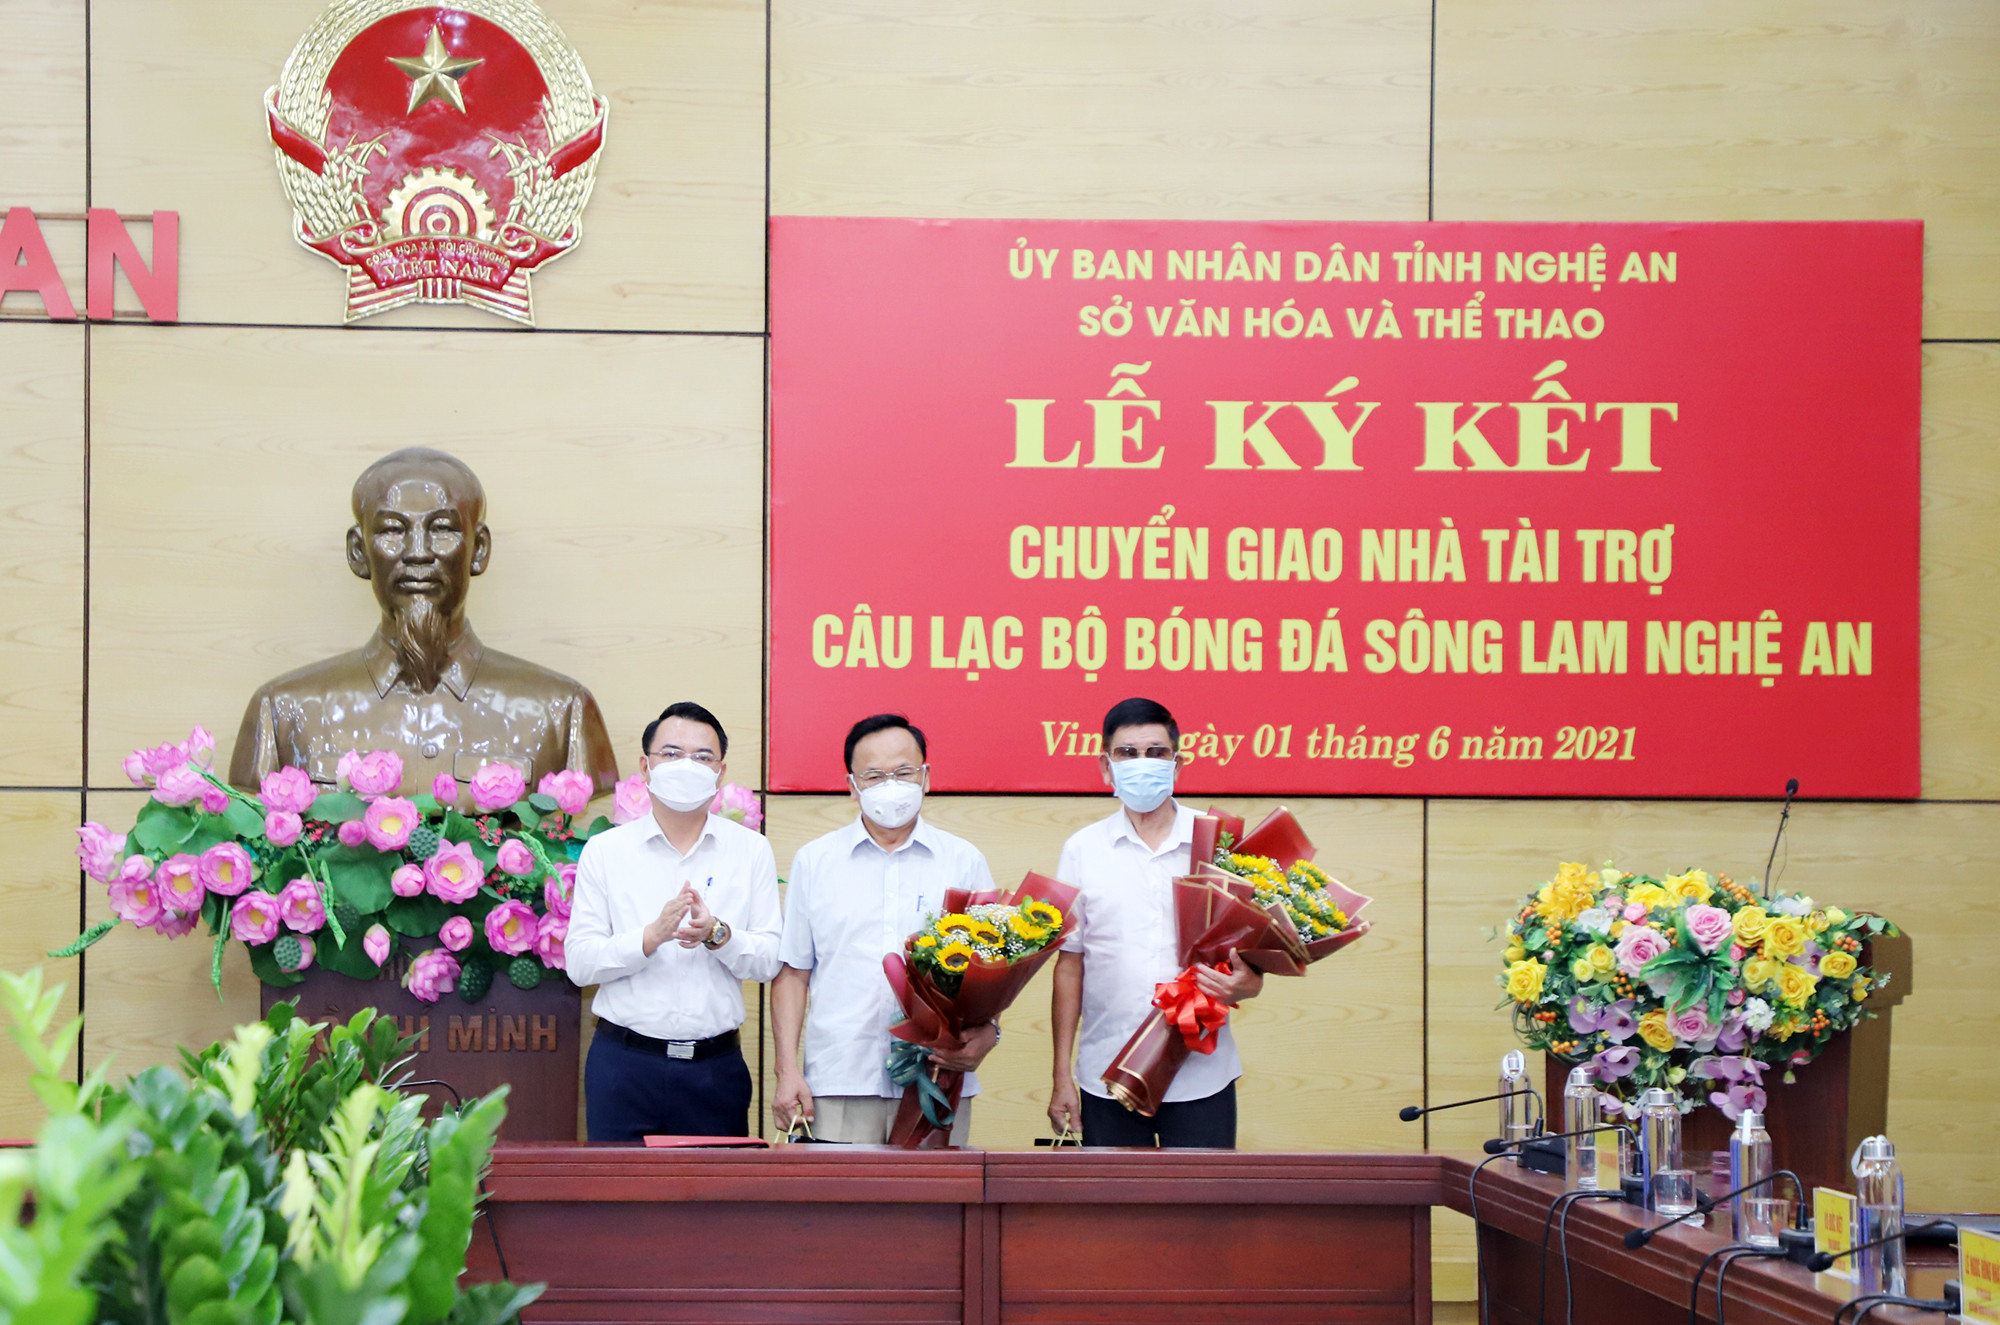 Đại diện Ngân hàng TMCP Bắc Á tặng hoa tri ân ông Hồ Văn Chiêm - nguyên GĐĐH CLB SLNA và ông Nguyễn Hồng Thanh - nguyên Chủ tịch CLB SLNA. Ảnh: Phạm Bằng